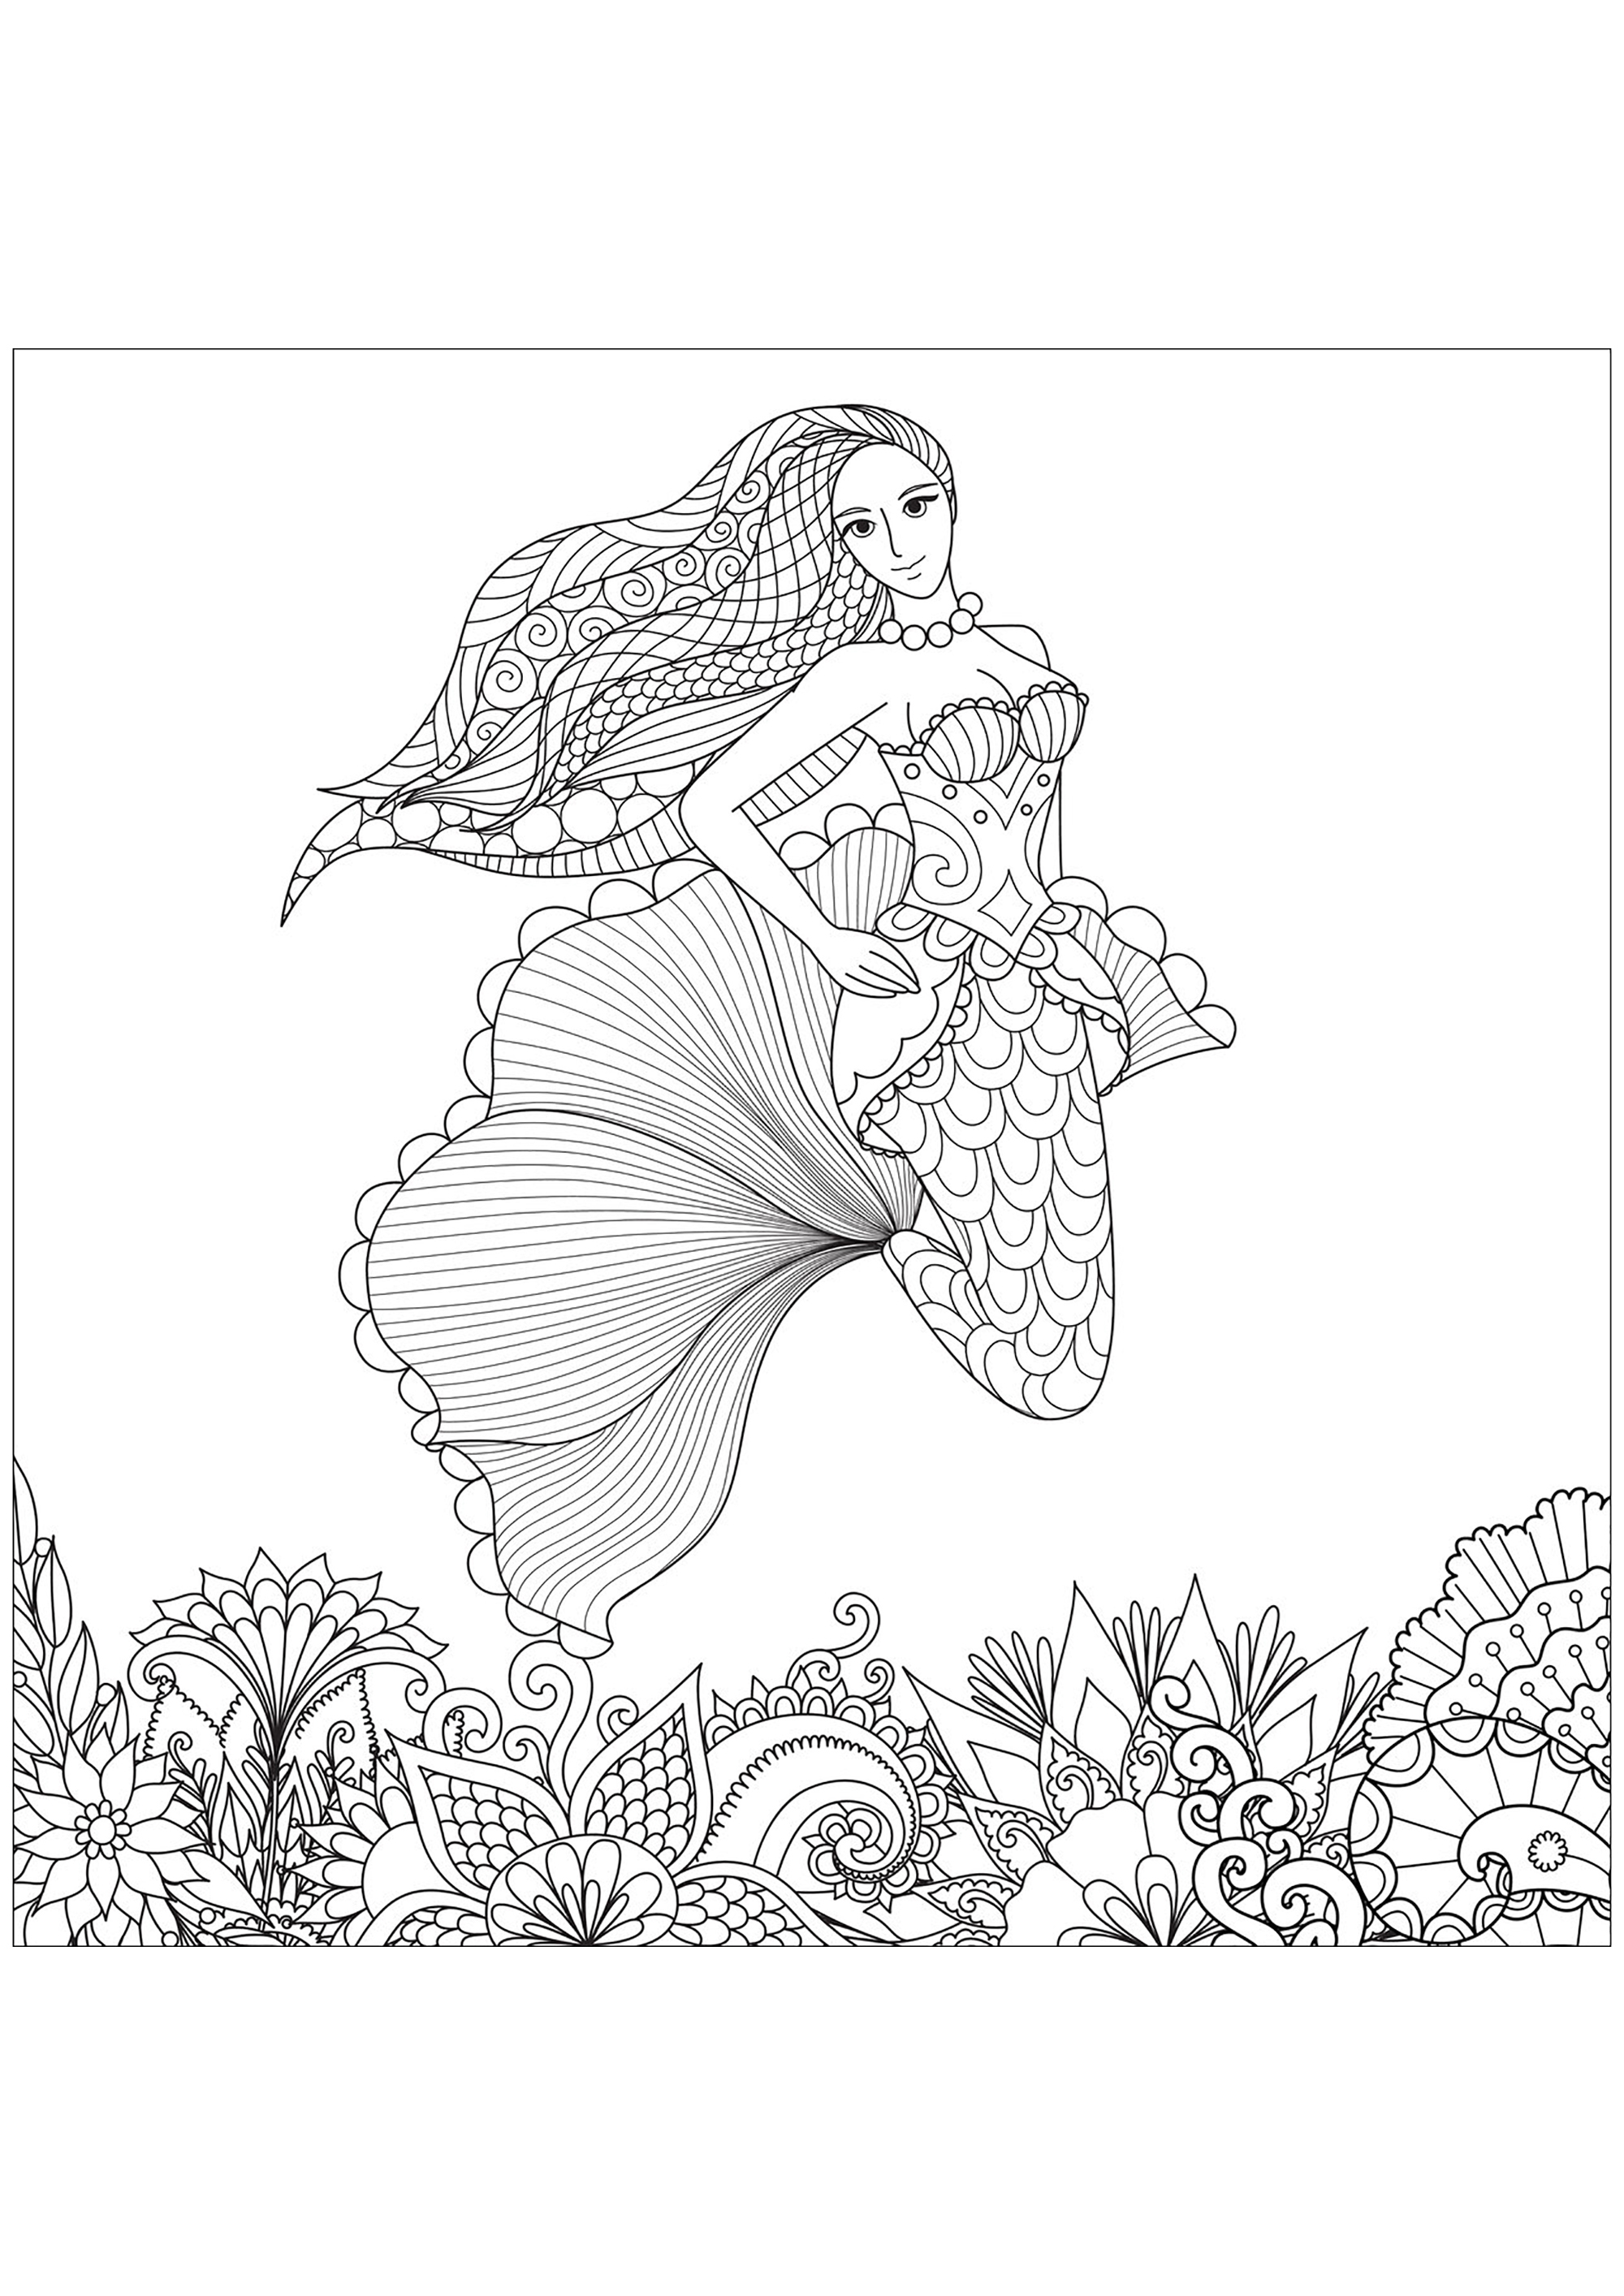 Graziosa sirena con bellissimi motivi nei capelli e fondale marino disegnato con Zentangles, Fonte : 123rf   Artista : Bimdeedee